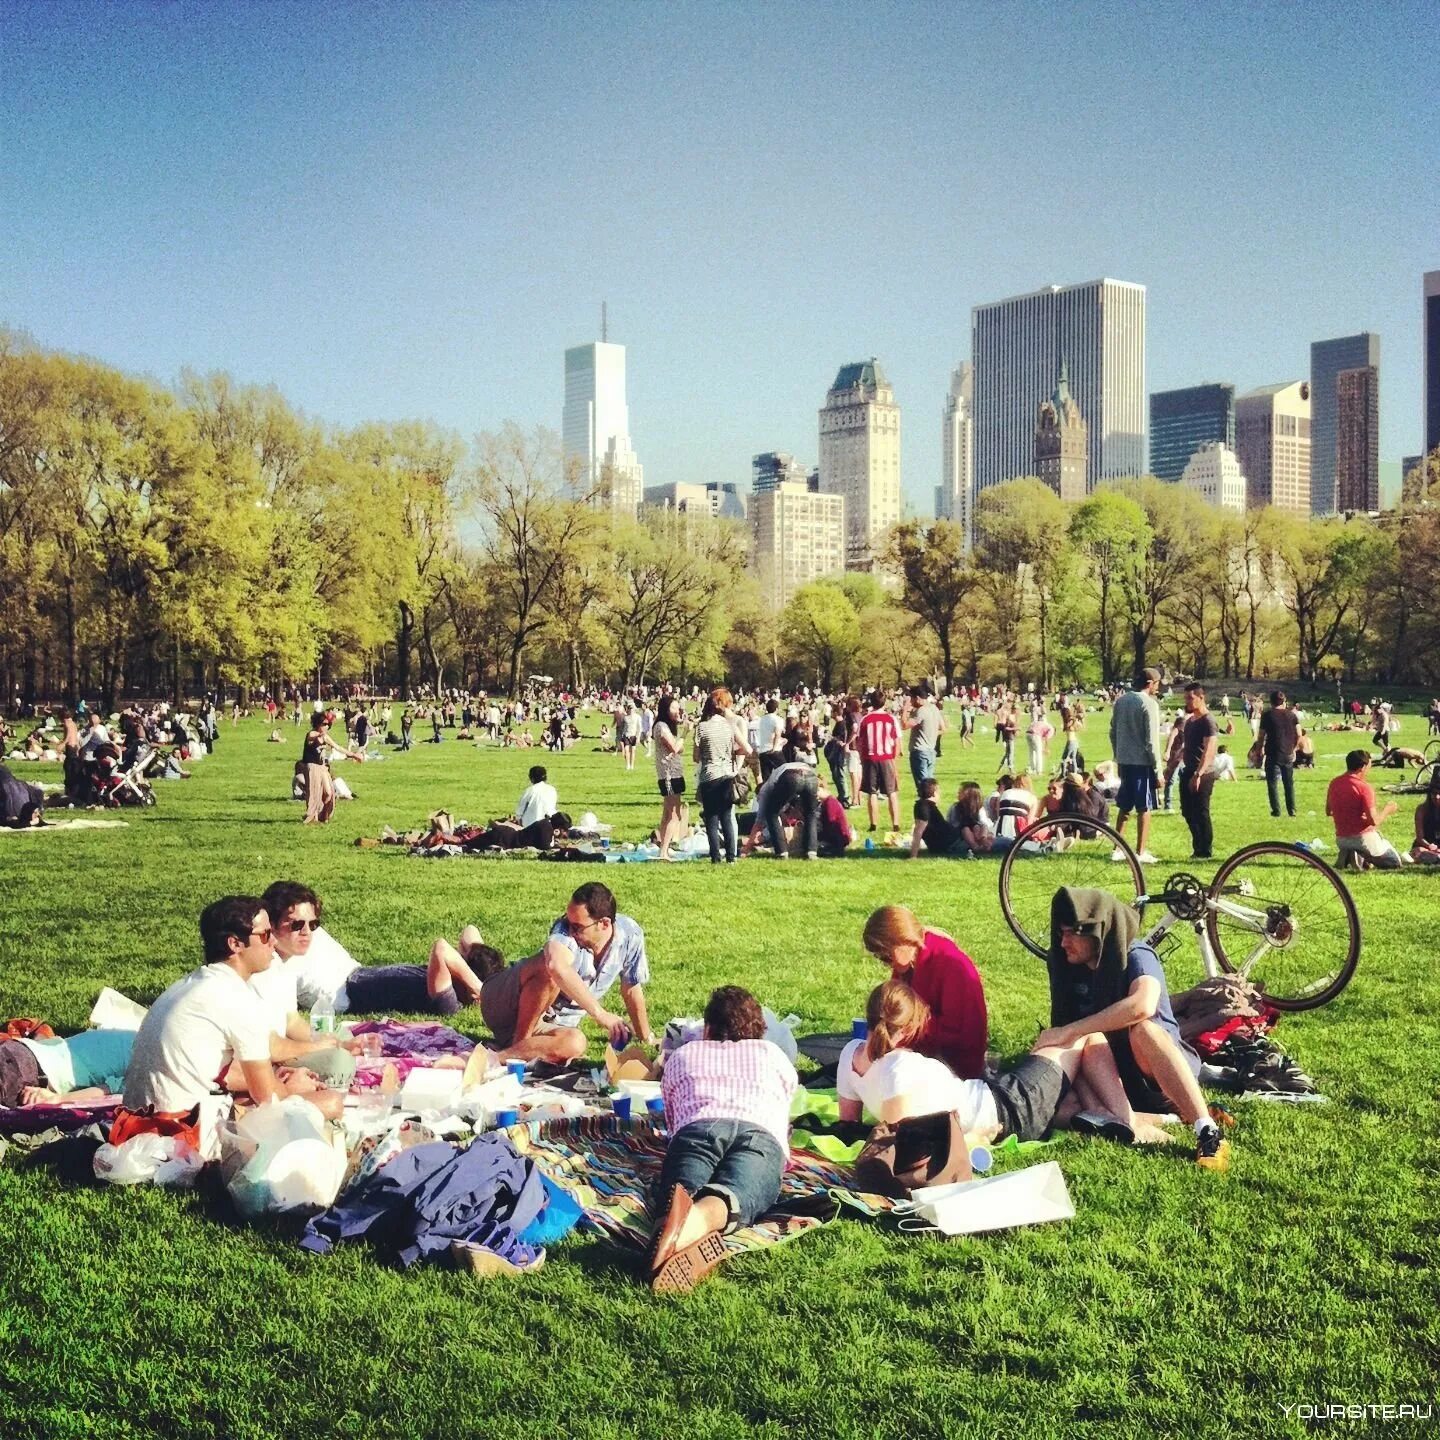 Пикник в Центральном парке Нью-Йорка. Центральный парк Нью-Йорк летом. Централ парк Нью-Йорка газон. Фотосессия в централ парке Нью Йорка. Lot of people in the park